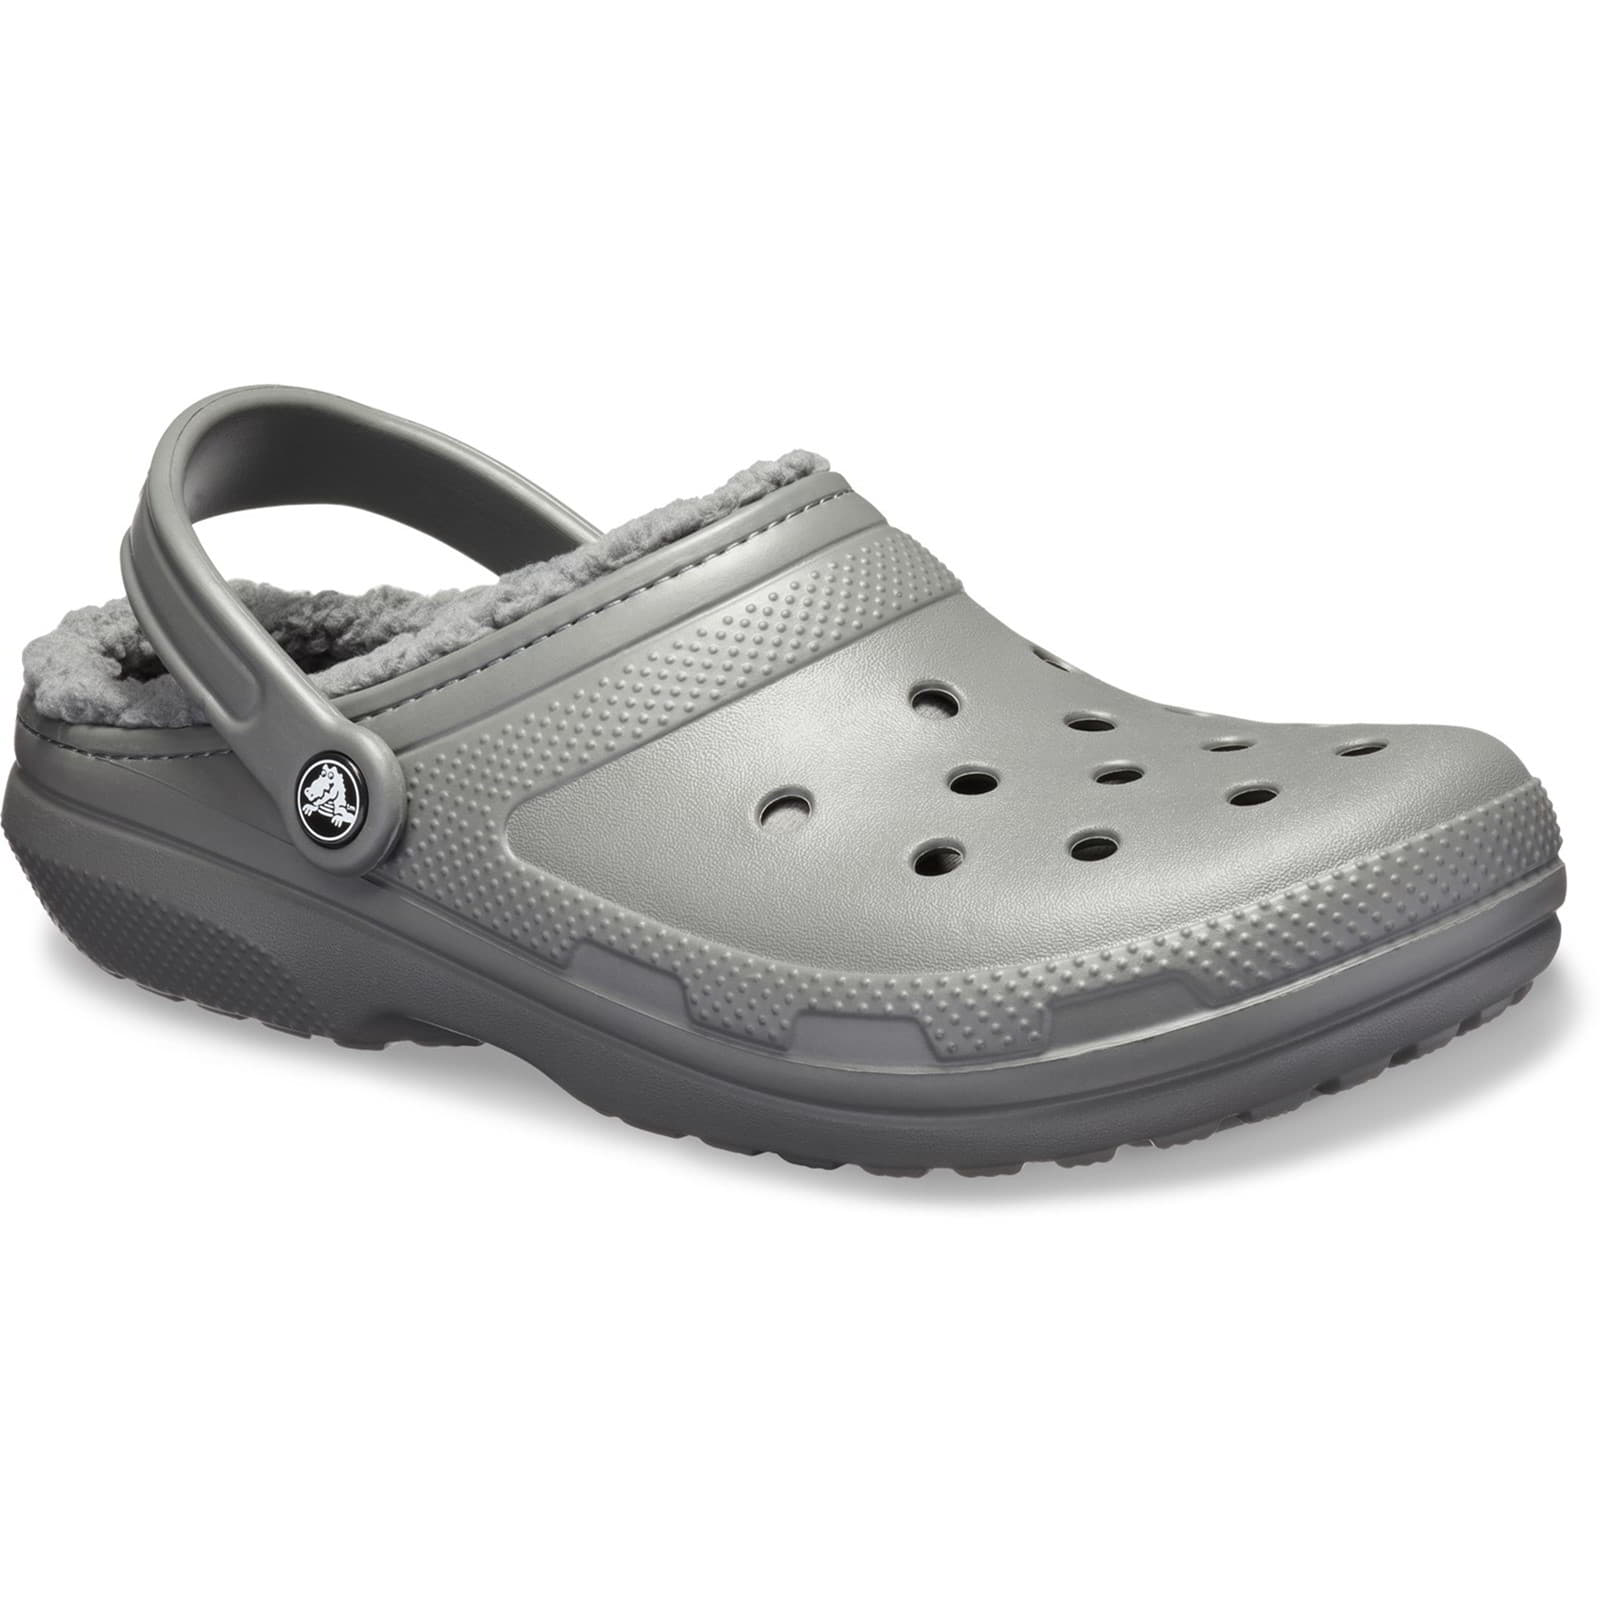 Crocs Men's Women's Classic Lined Clog Warm Slip On Slippers Shoes - UK M9-W10 / EU 43-44 / US M10-W12